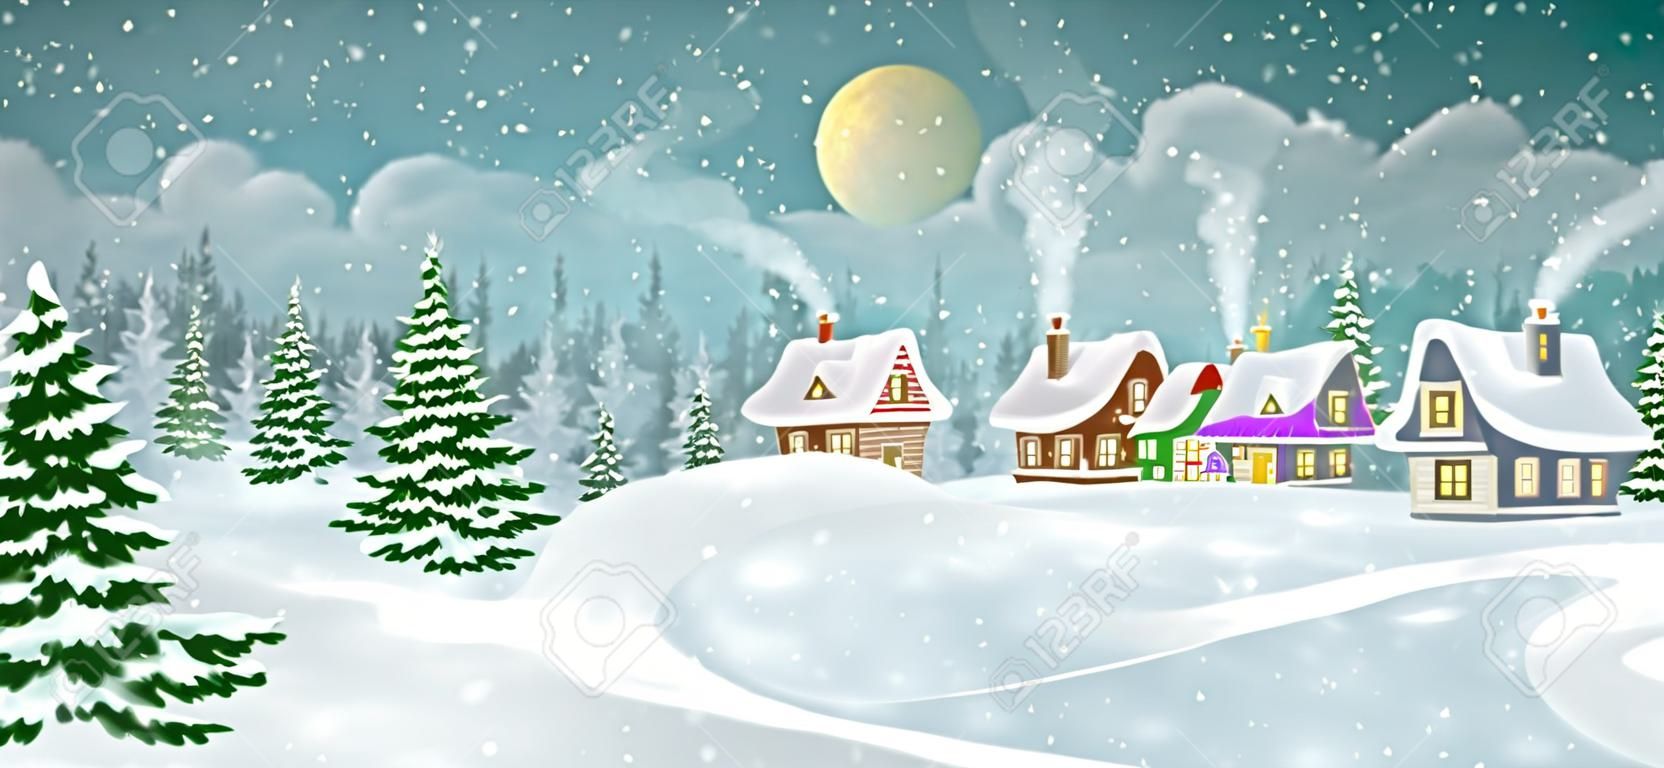 冬天与松树林的村庄风景。小的童话般的房子被雪覆盖着。